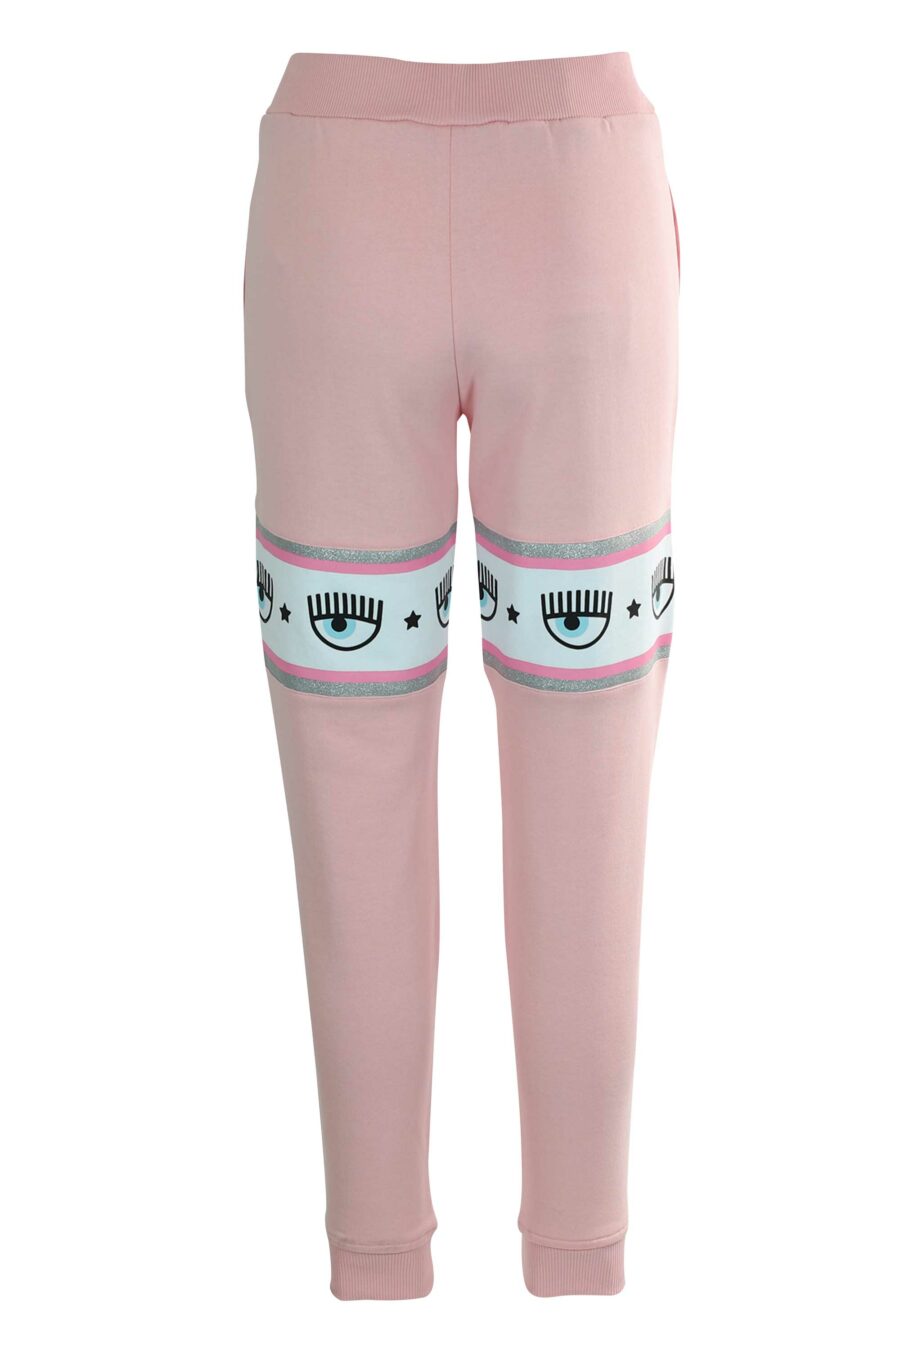 Pantalón de chándal rosa con capucha y logo en cinta blanco y plateado” - 8052672419163 3